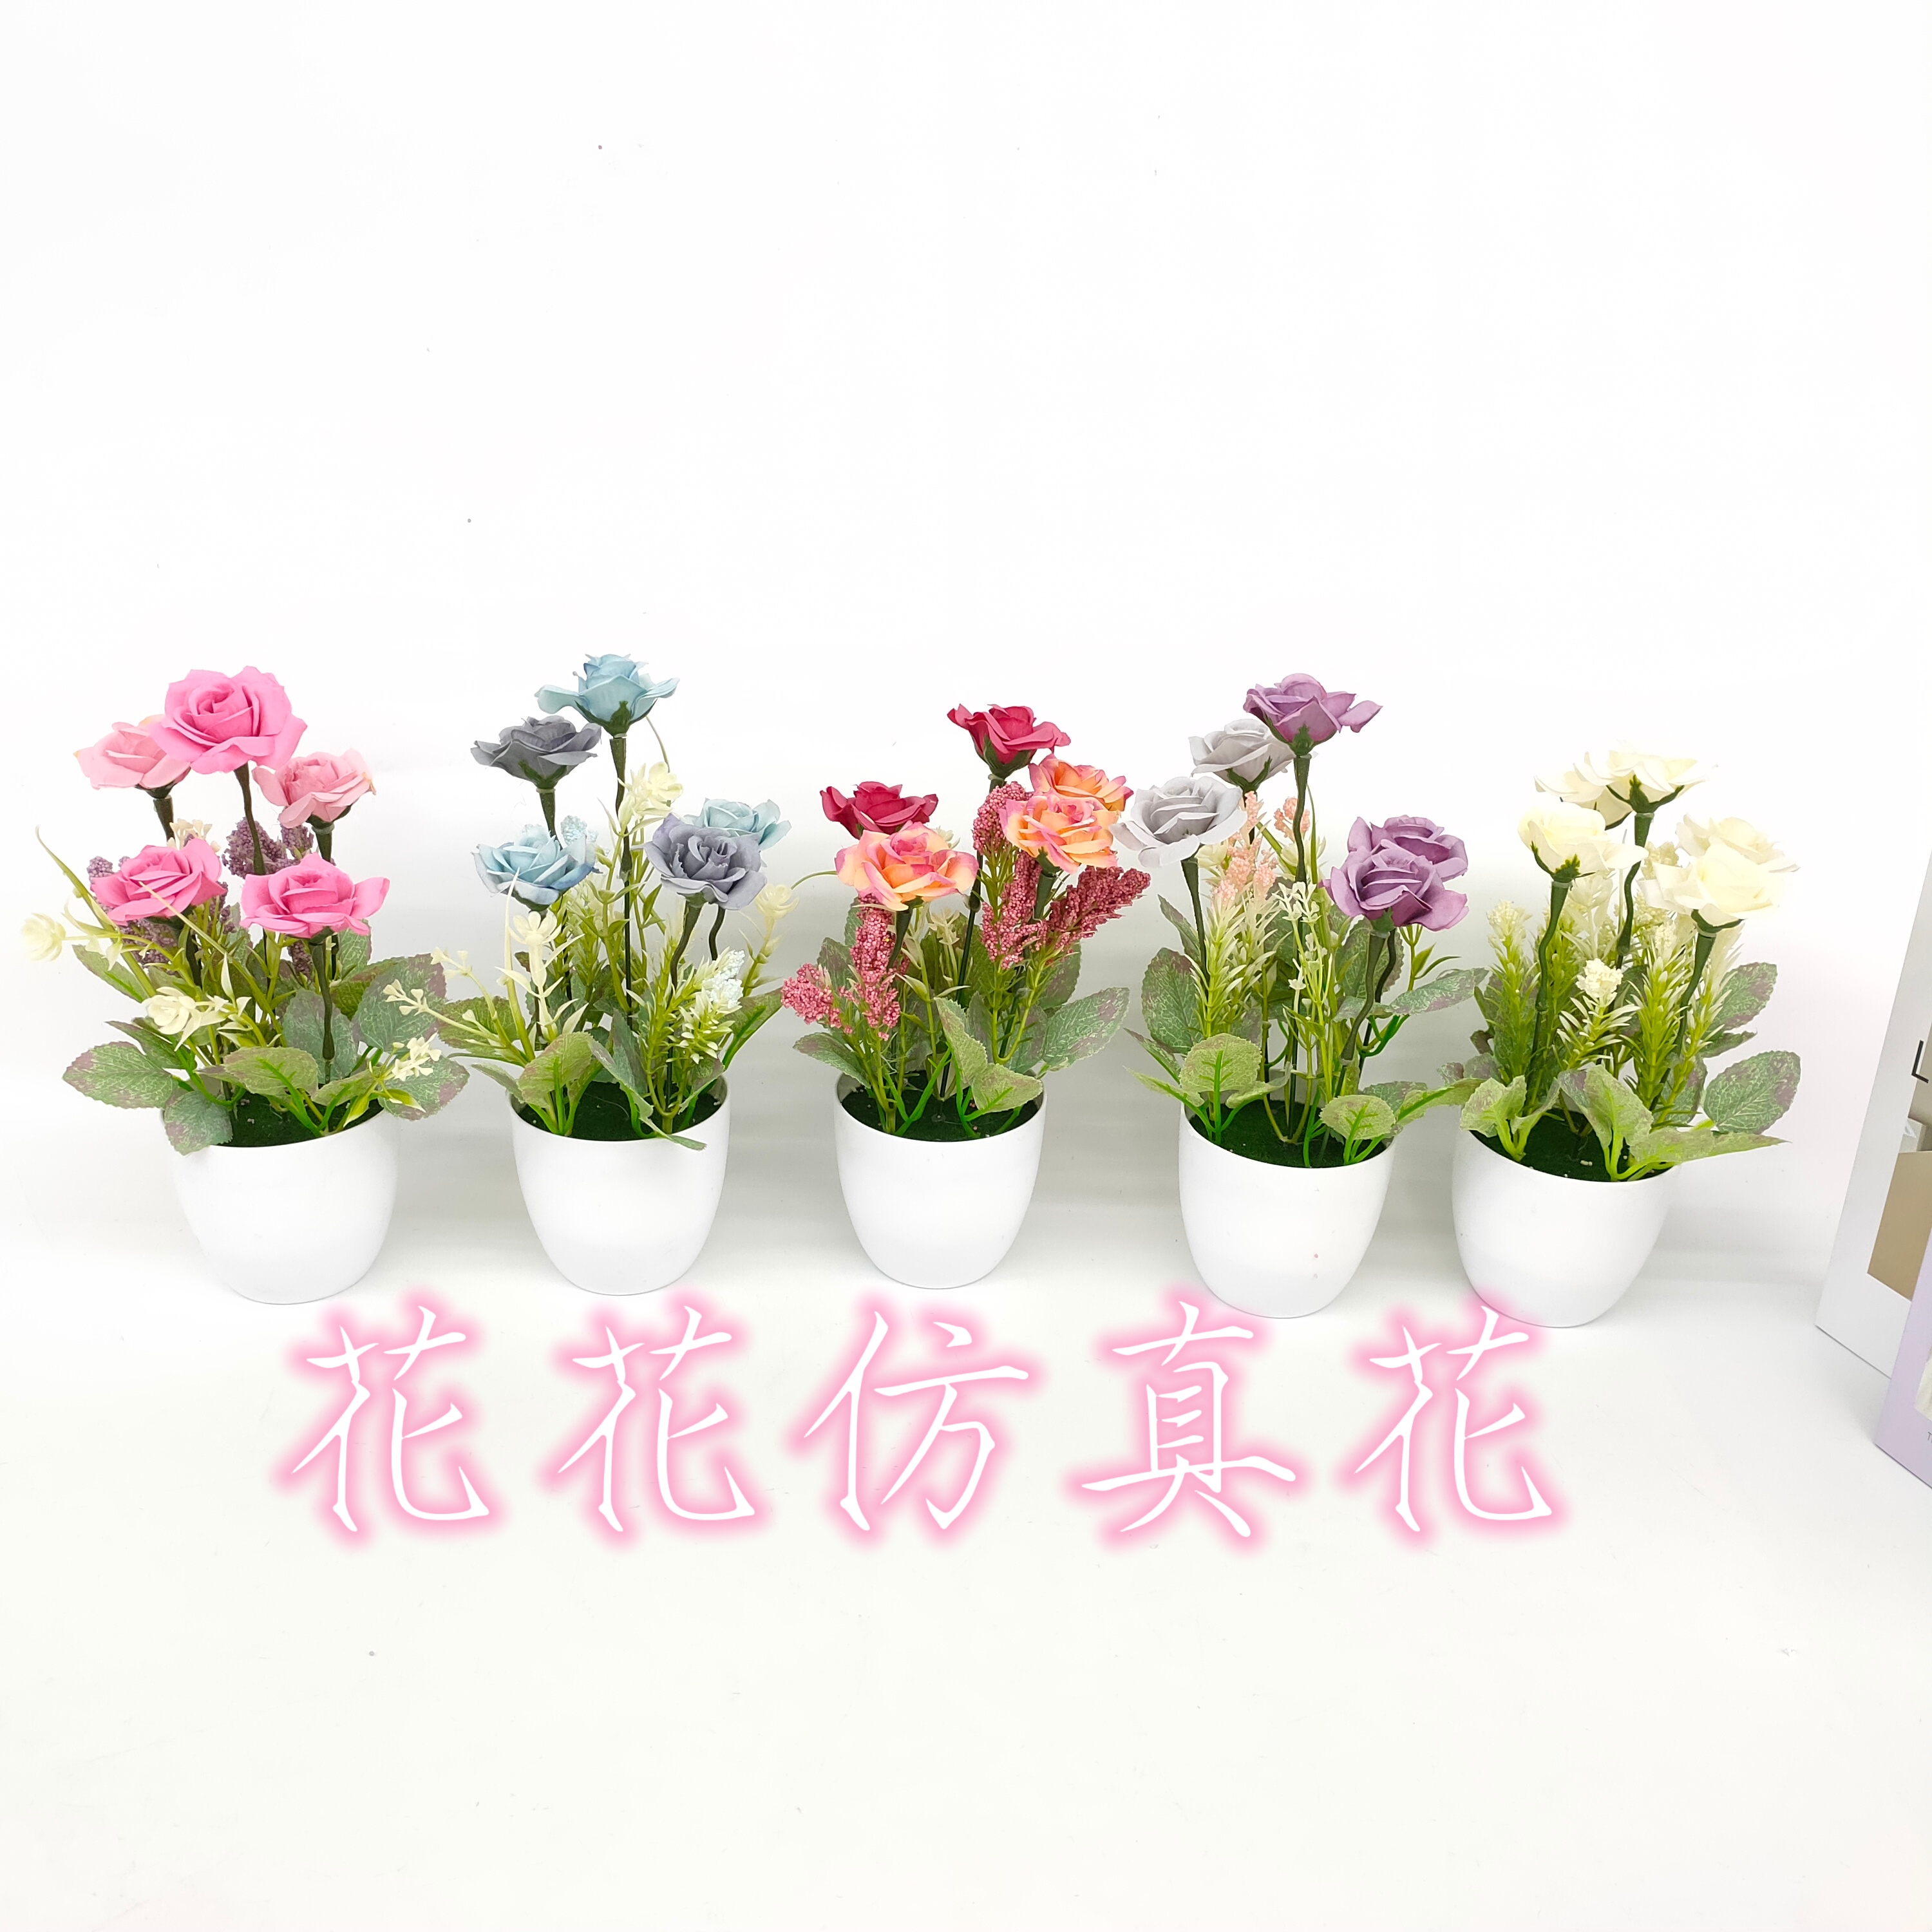 仿真花假花盆景塑料盆小玫瑰花日用摆件装饰品